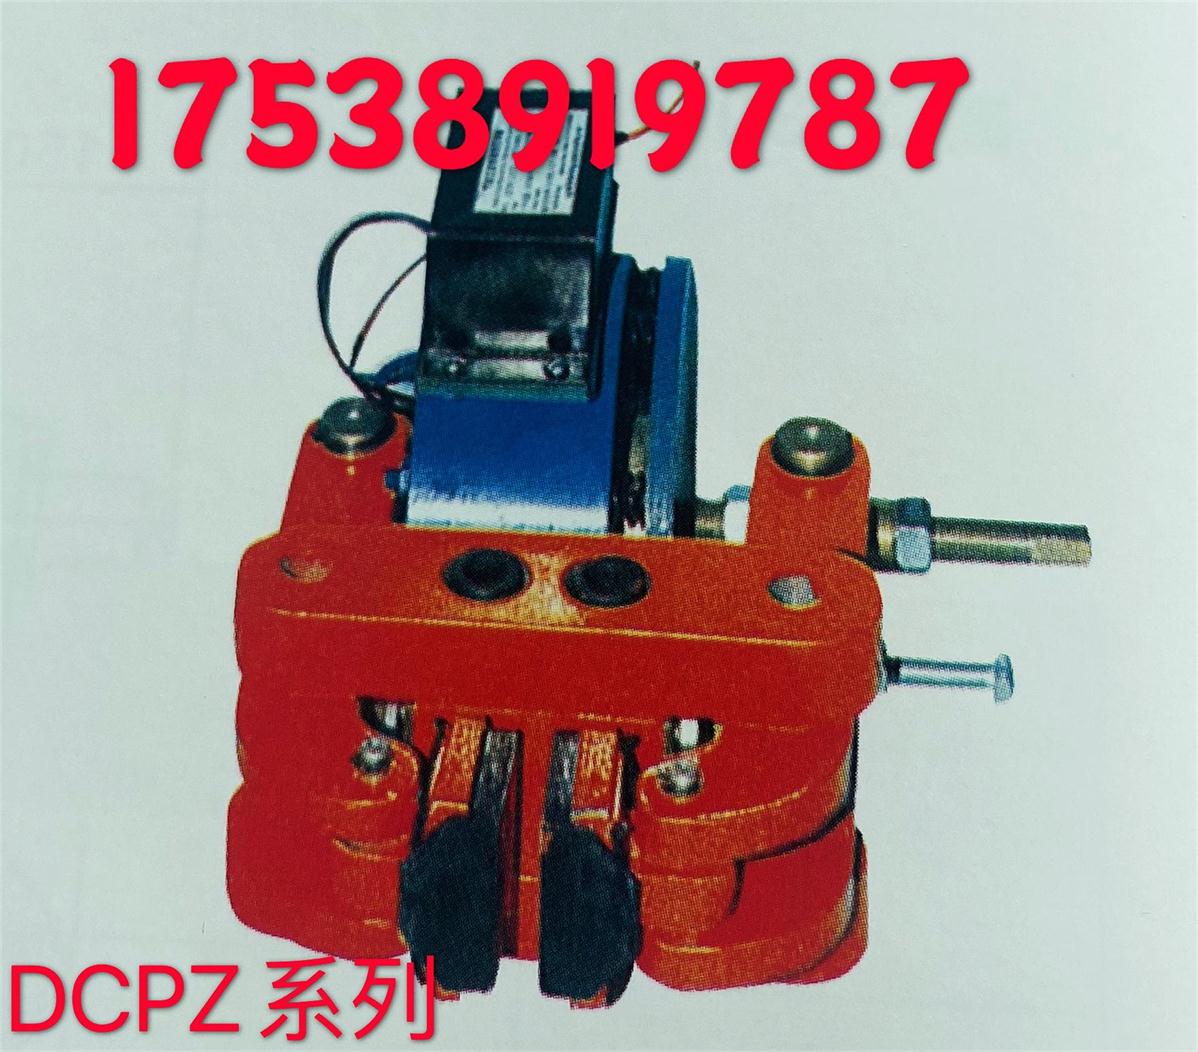 DCPZ系列电磁钳盘式制动器